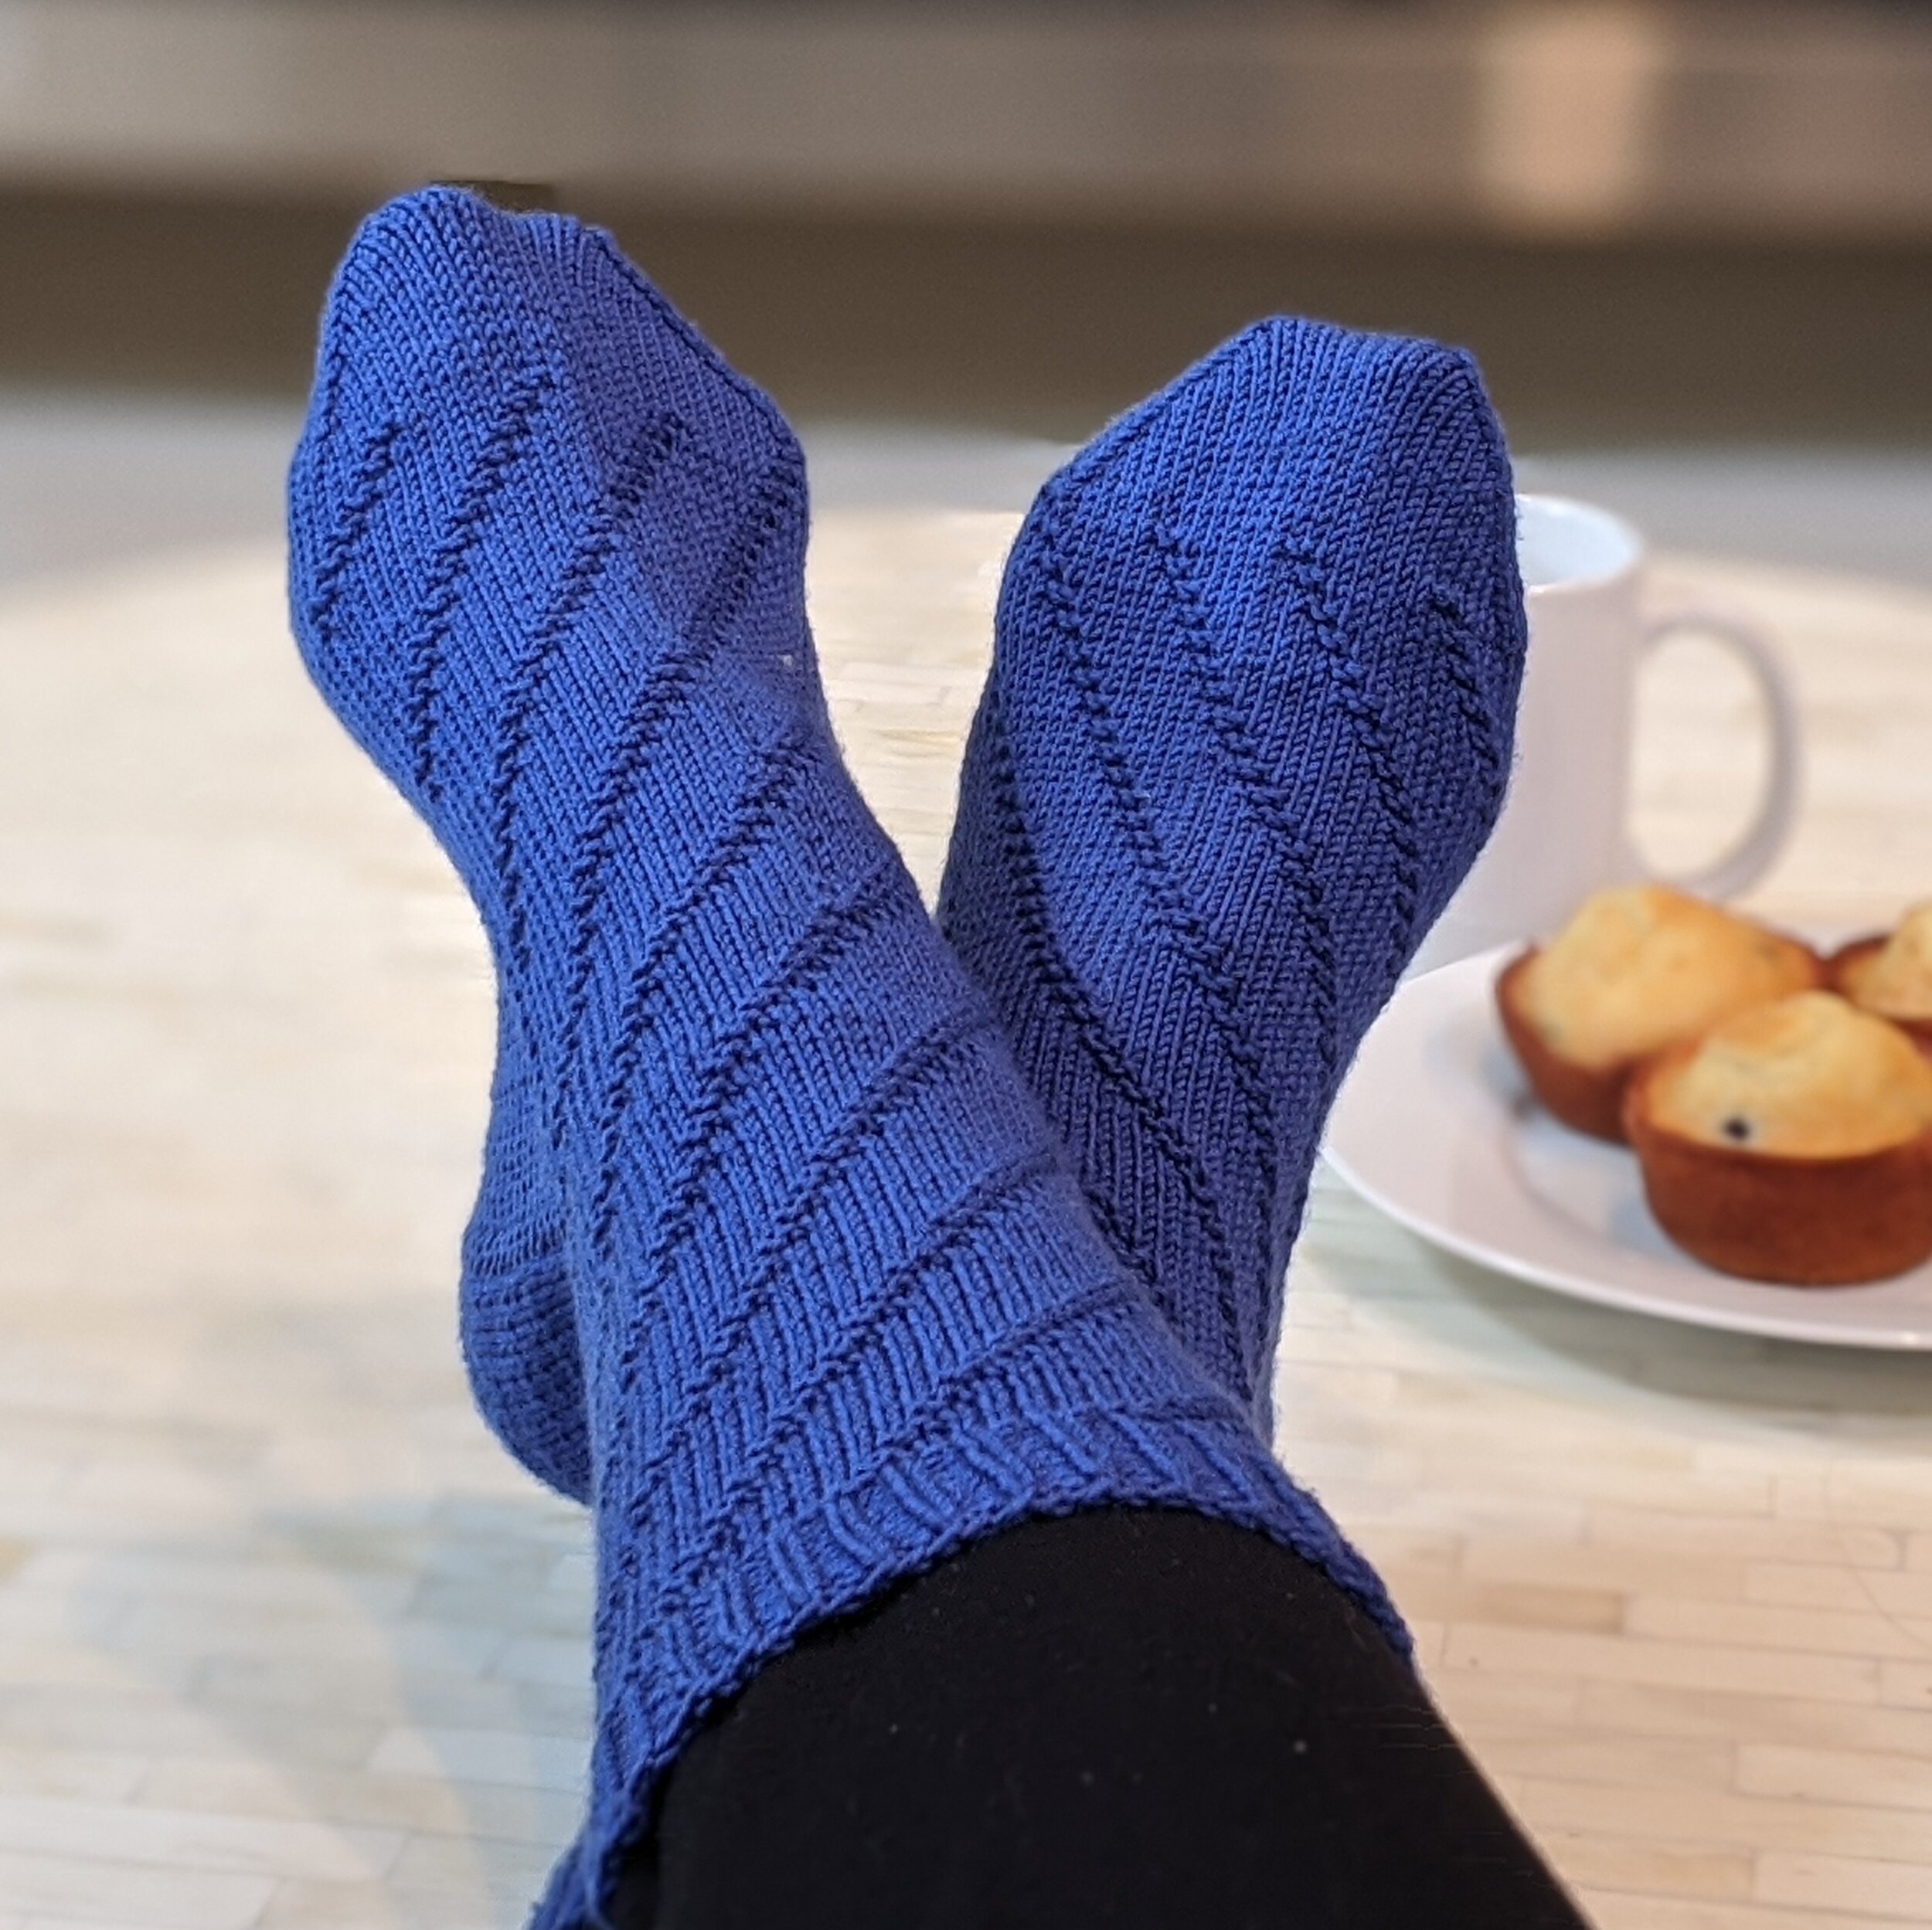 Beginner Socks Knitting Pattern, Easy Socks Knit Pattern Darling